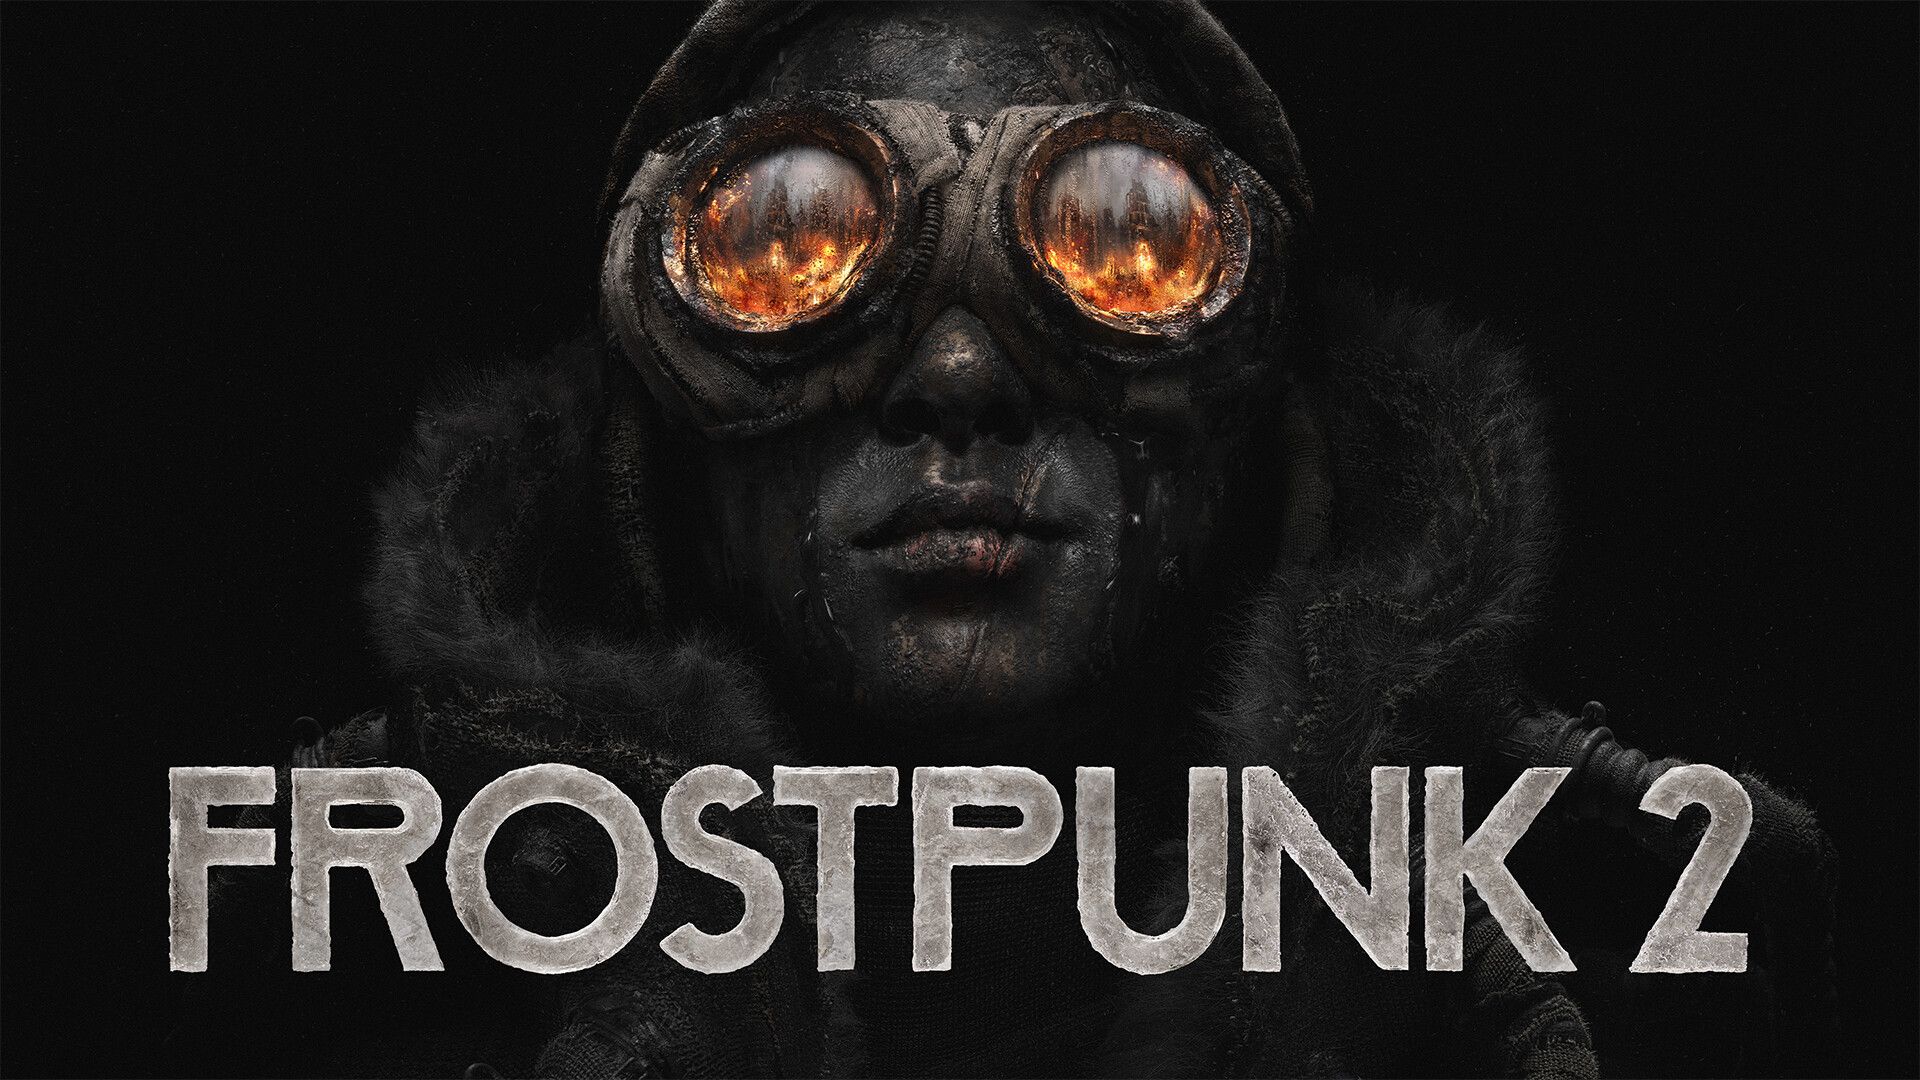 Video: Frostpunk 2 – City Must Not Fall